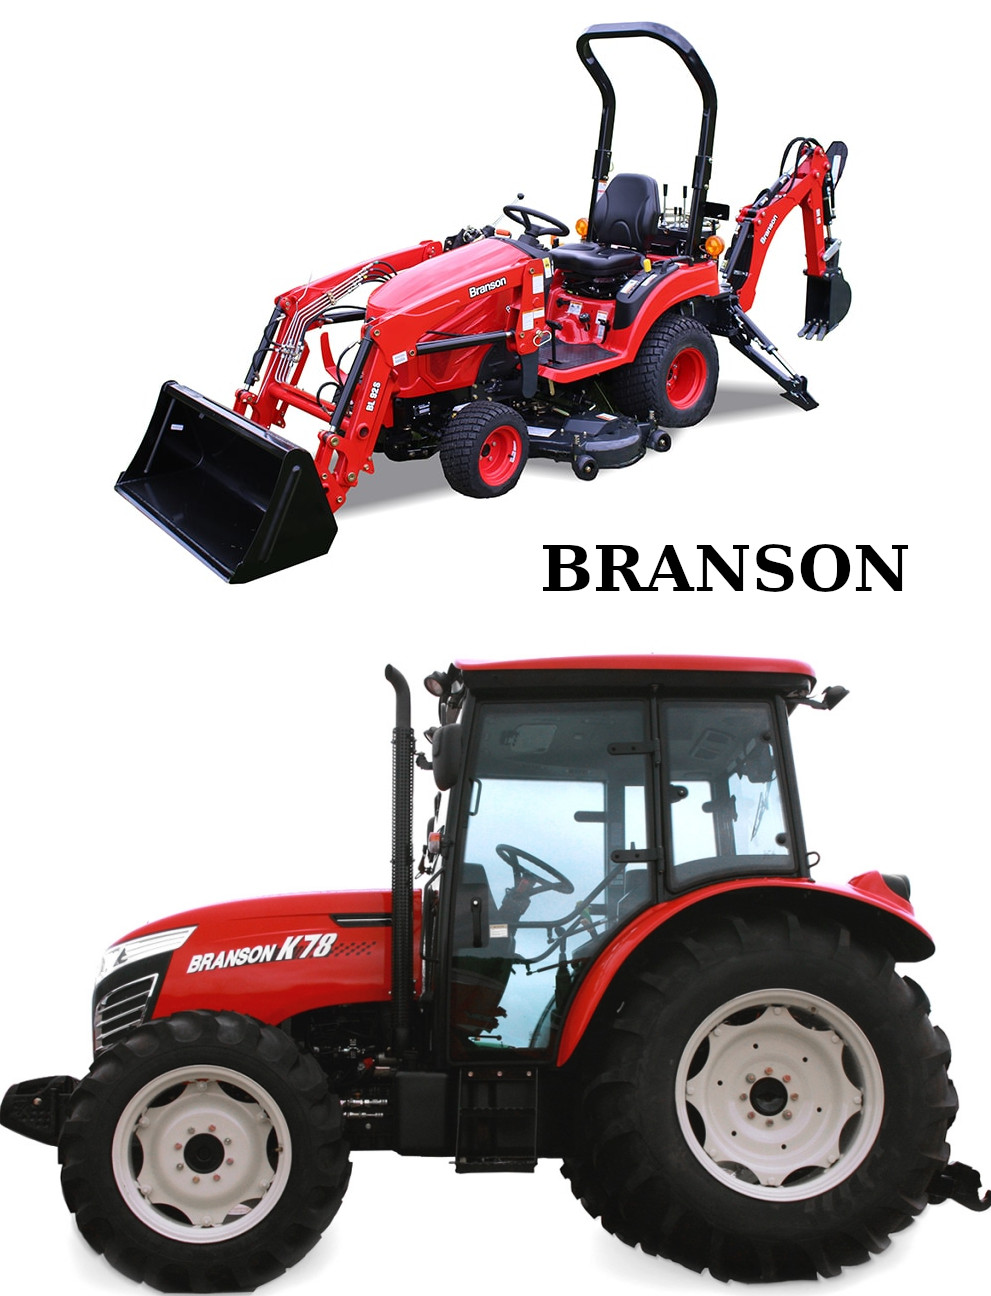   Branson traktorok